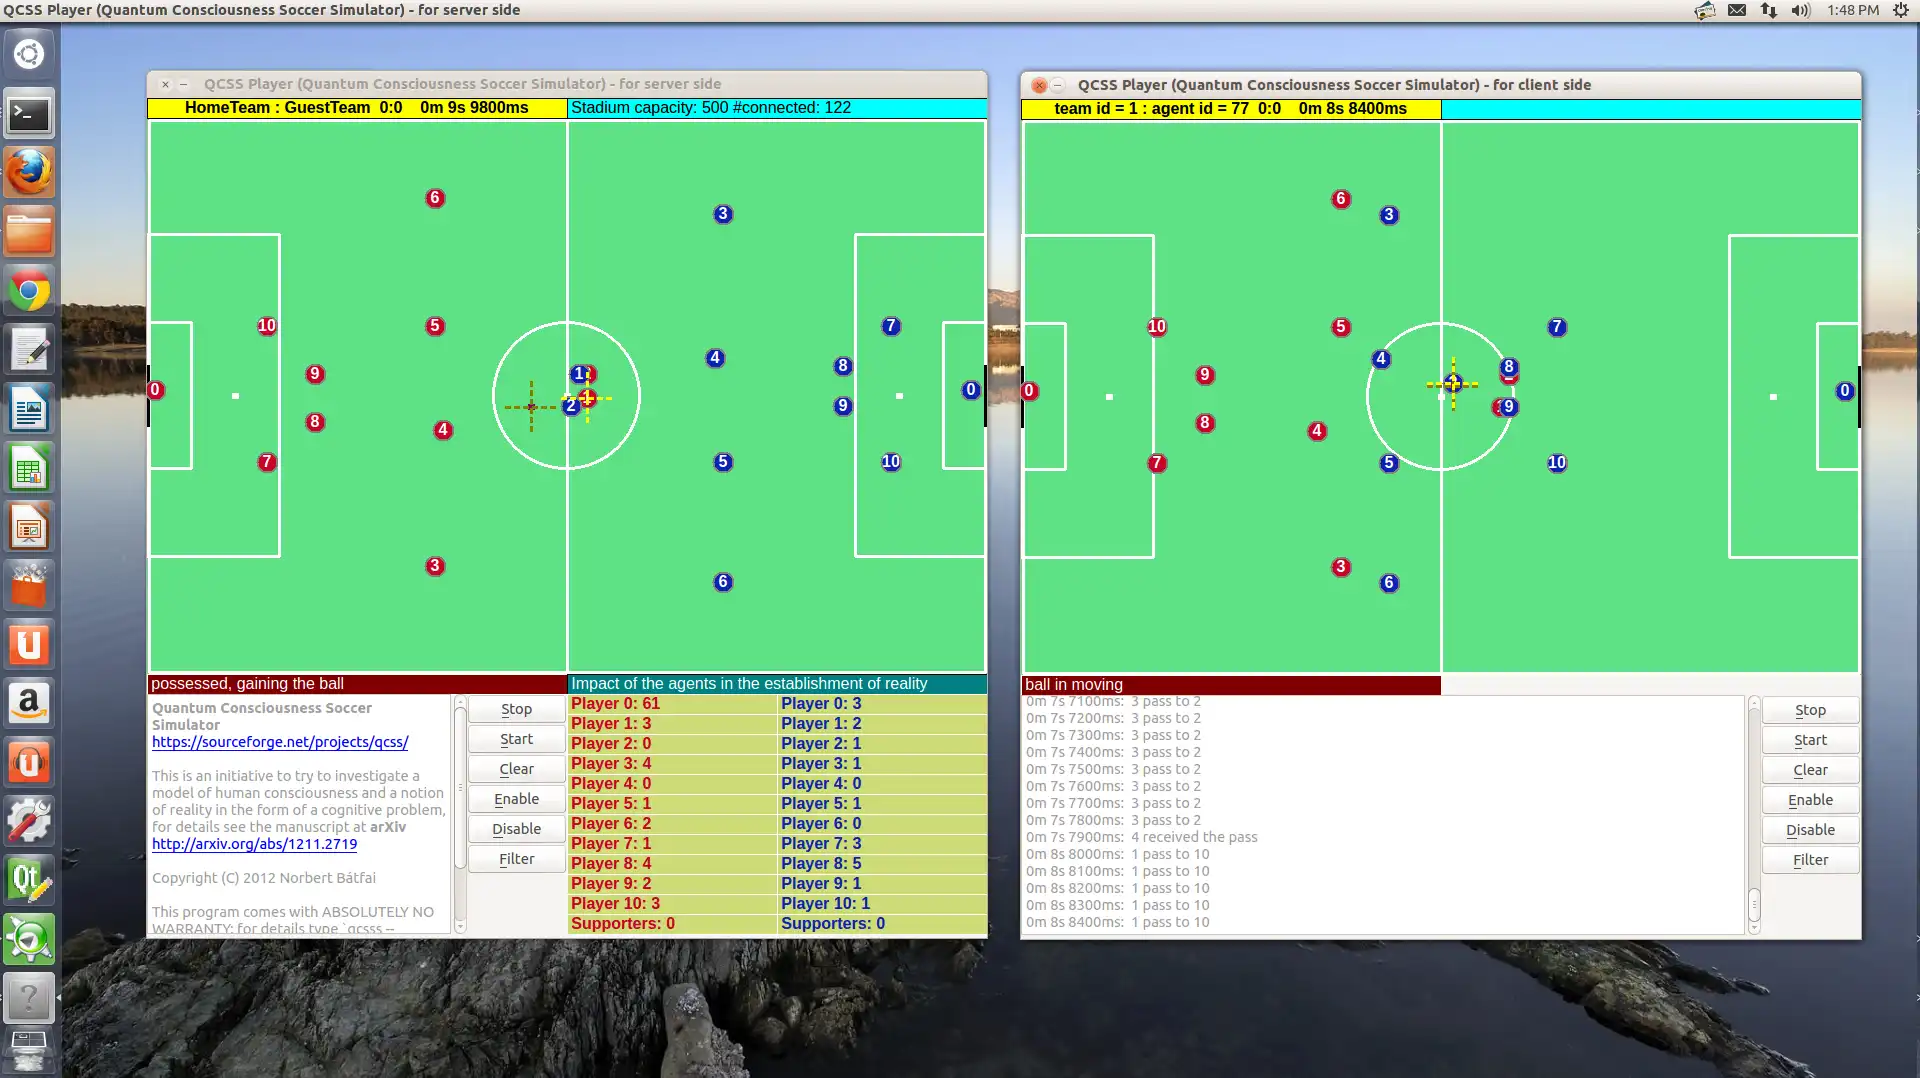 Descargue la herramienta web o la aplicación web Quantum Consciousness Soccer Simulator